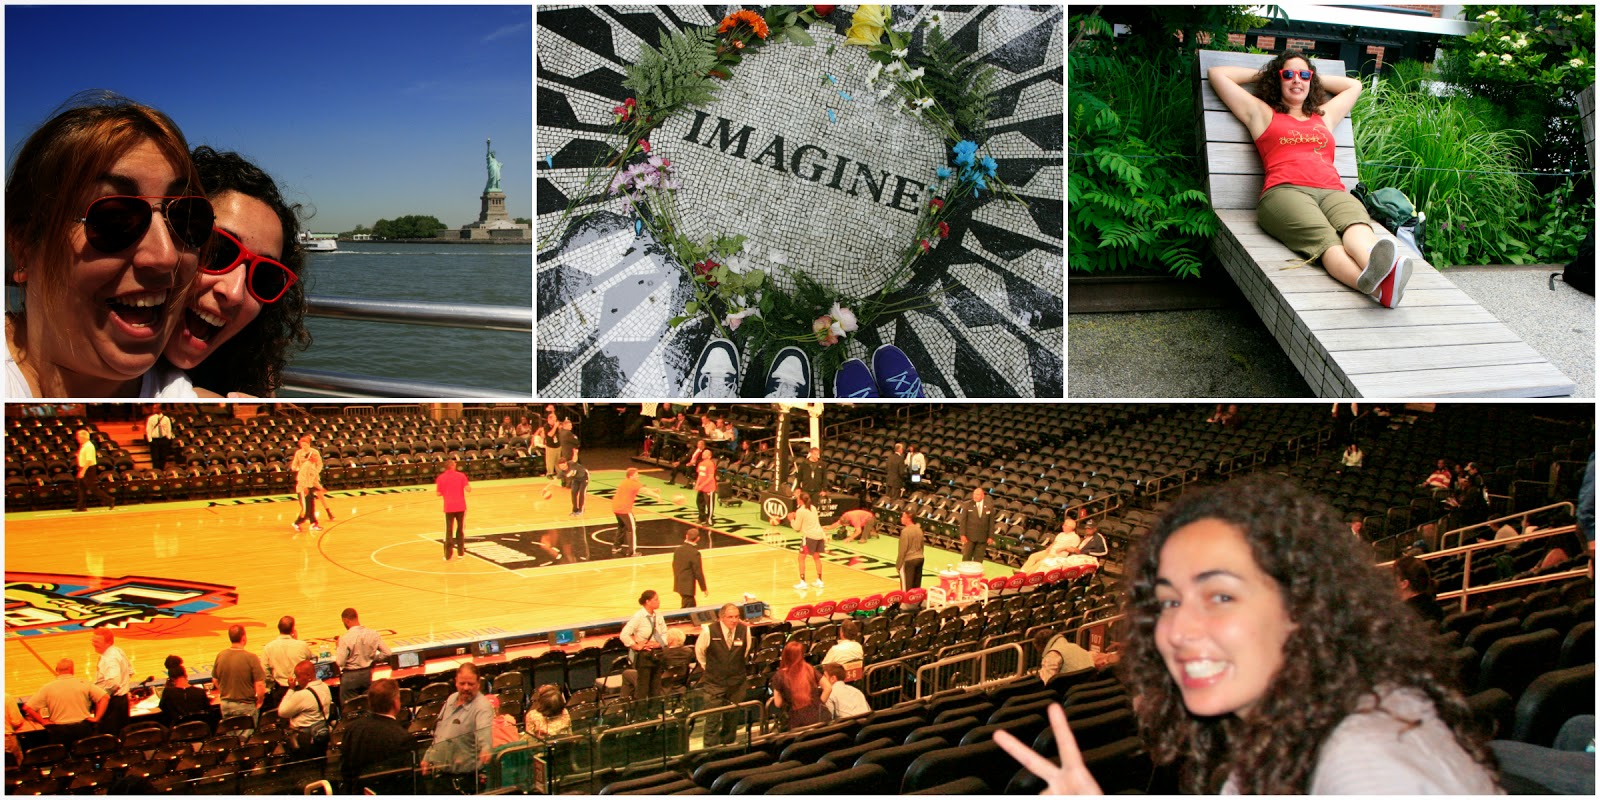 Què fer a Nova Tork? Creure pel Hudson per veure l'Estàtua de la Llibertat, visitar el tribut a John Lennon, passejar pel High Line Park, bàsquet al Madison Square Garden